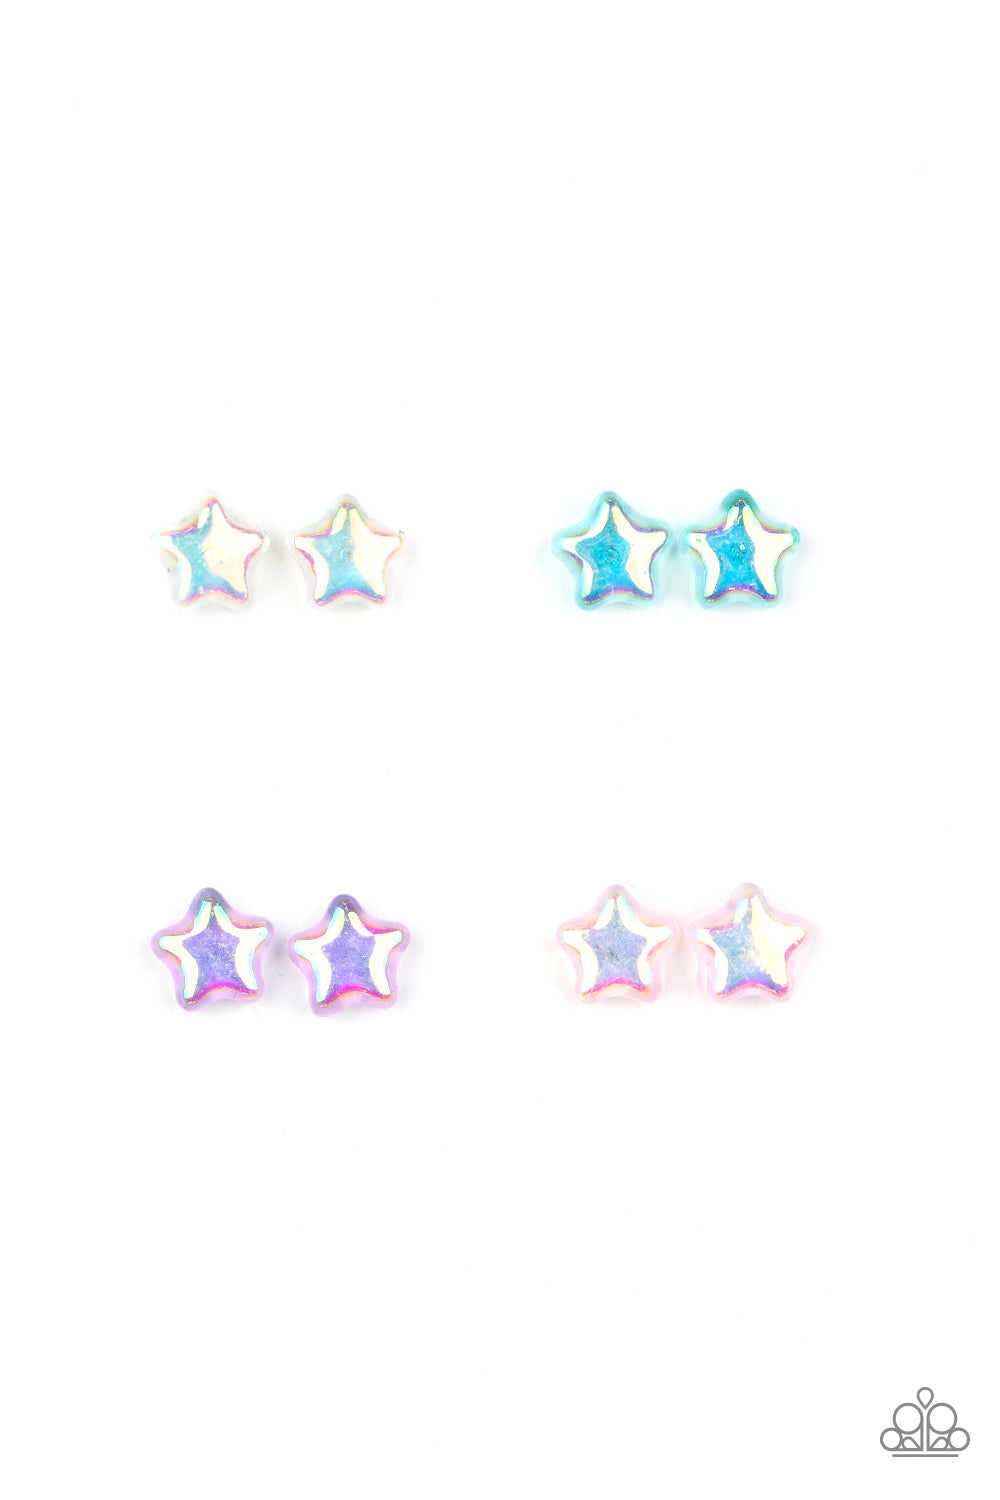 Starlet Shimmer Iridescent Earring Kit - The V Resale Boutique